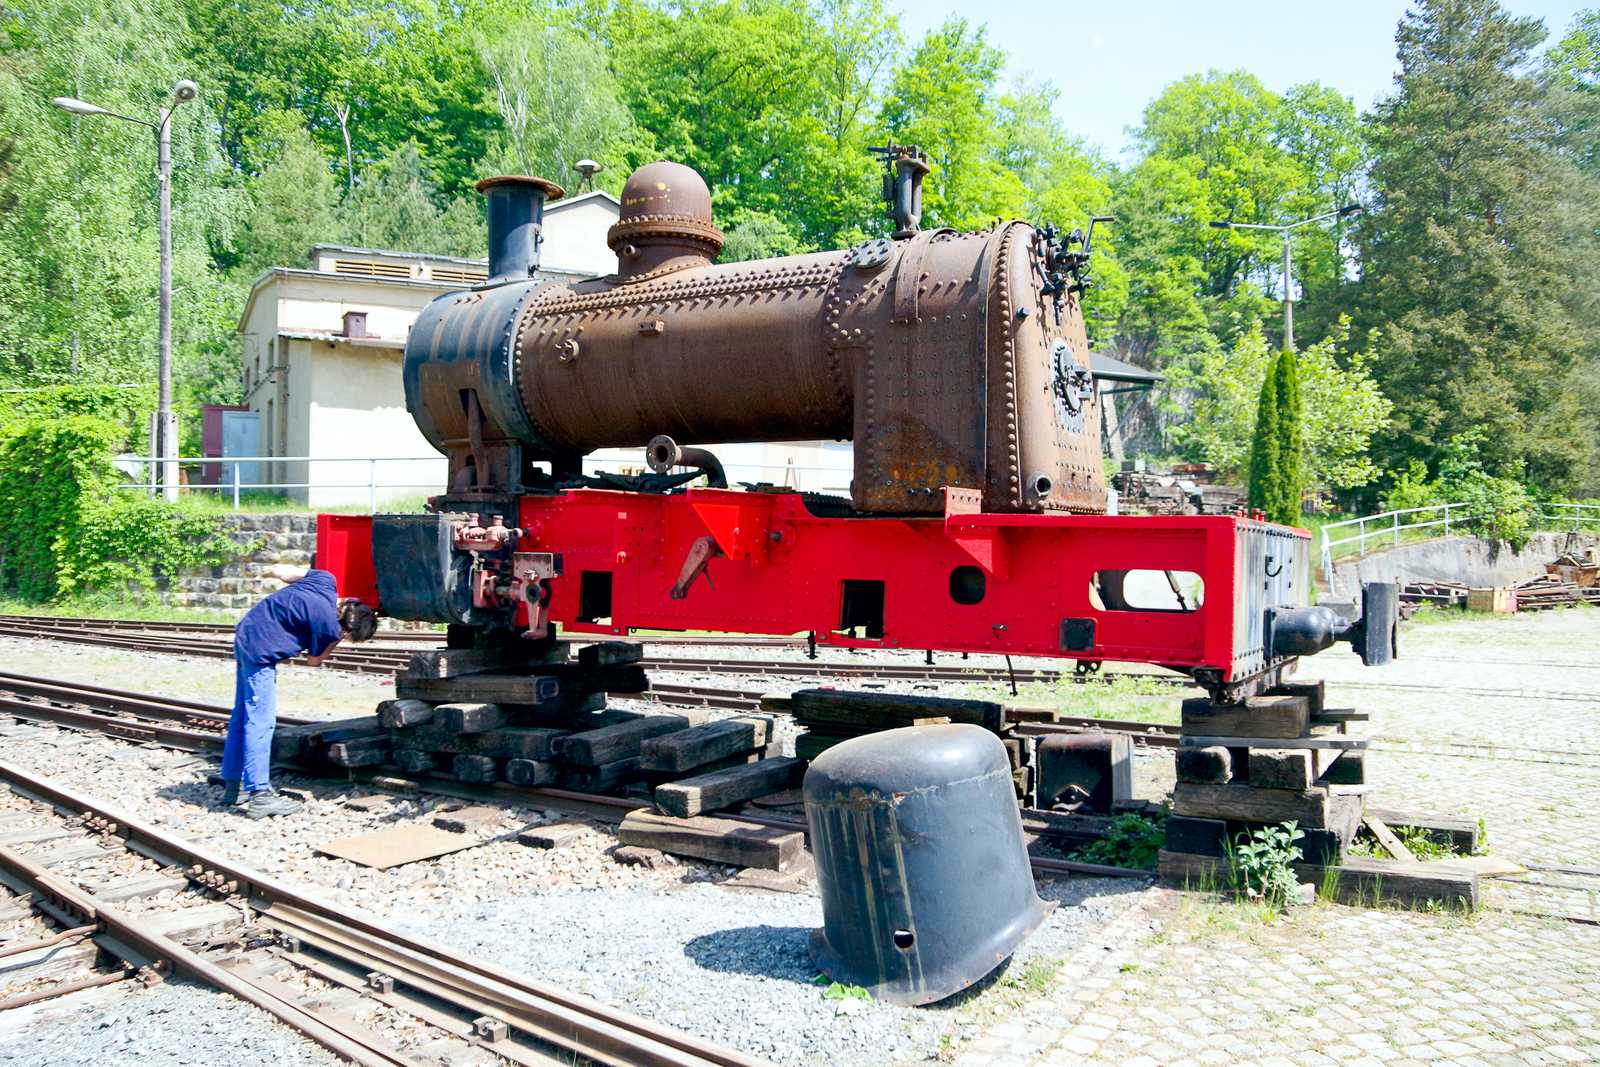 Am 14. Mai erhielt der Rahmens der Dampflok vom Henschel-Typ „Helfmann“ einen neuen roten Anstrich.